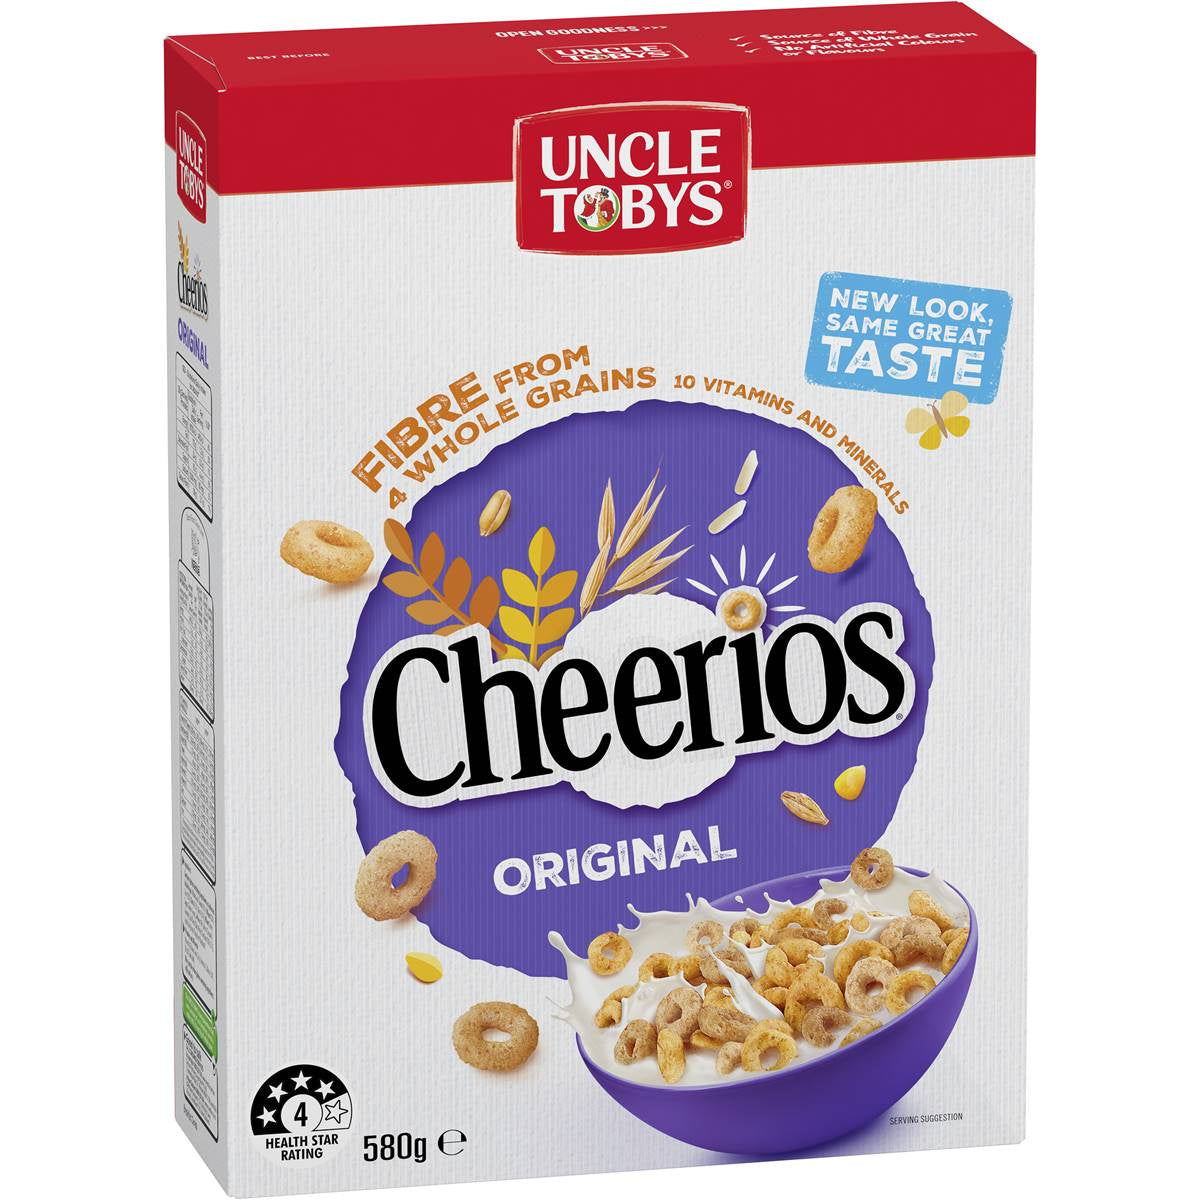 Uncle Tobys Cheerios Original 560g